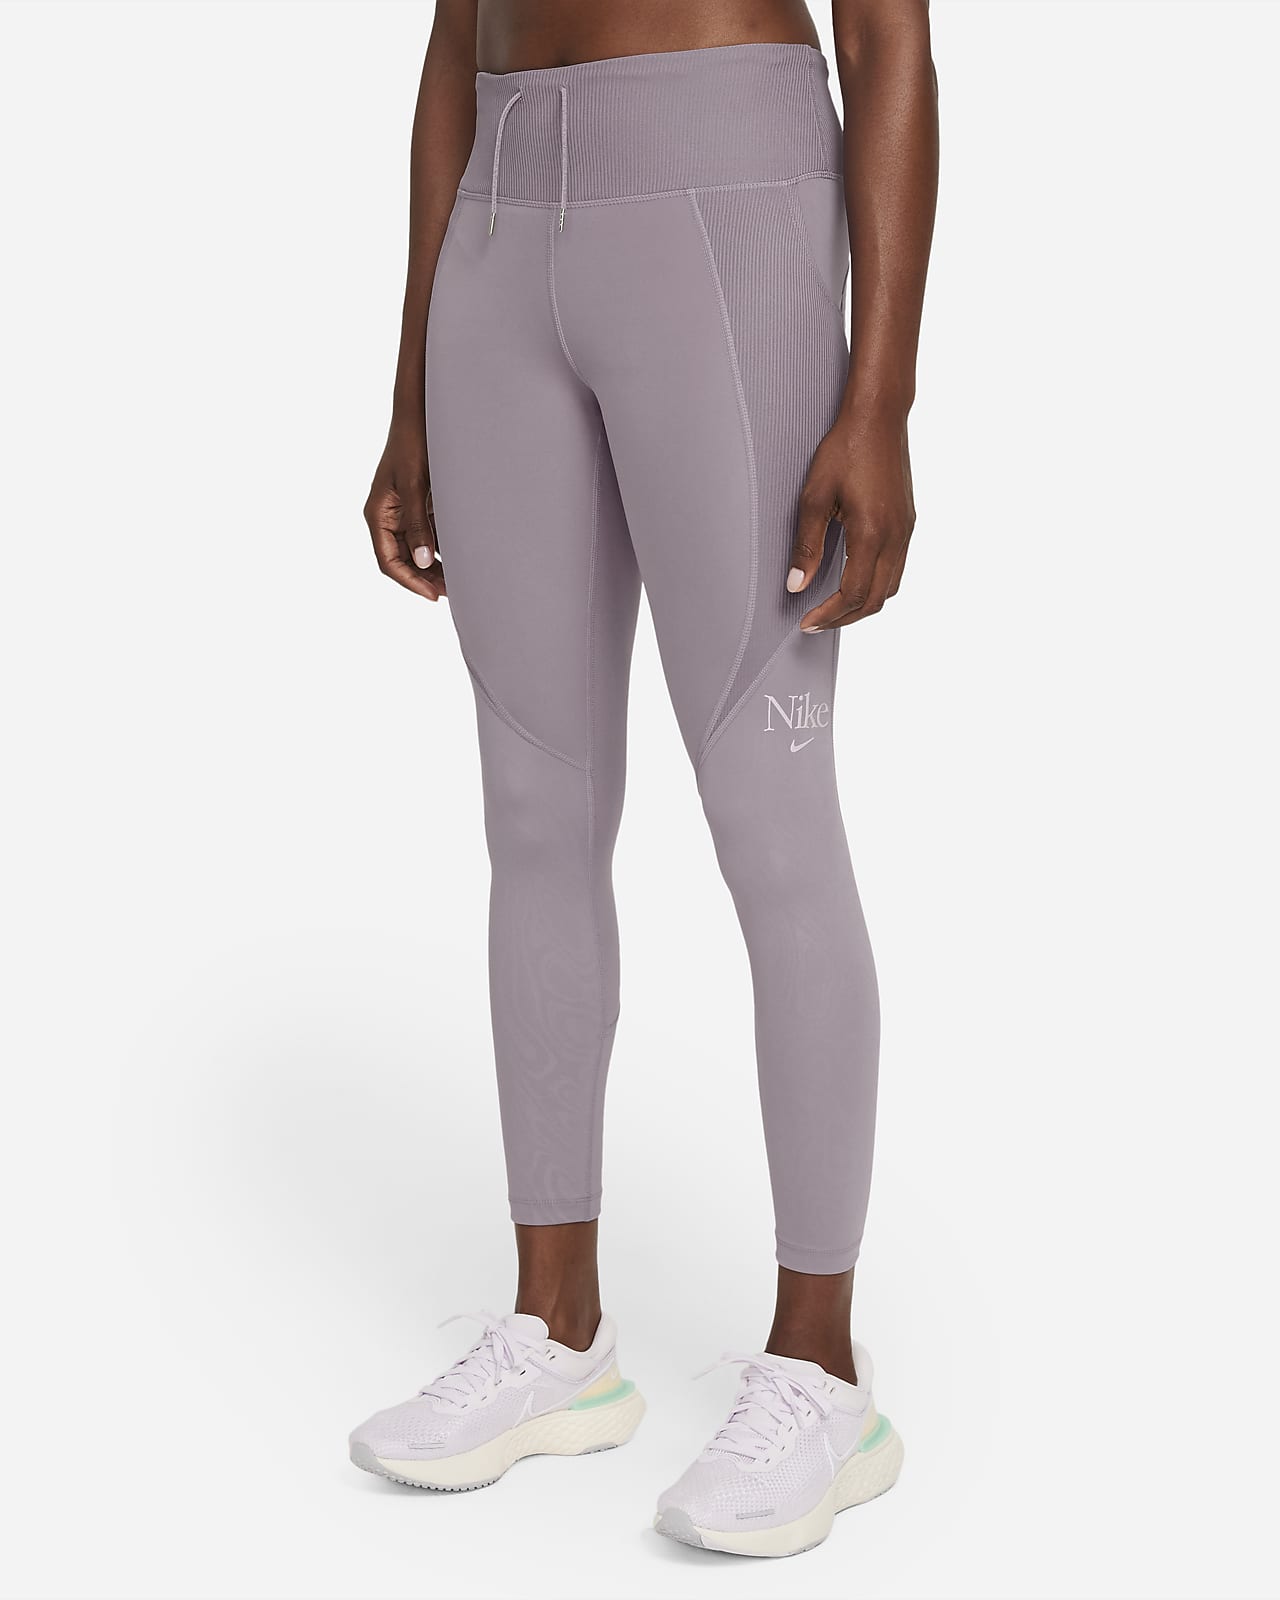 Nike Femme Fast 女款跑步九分內搭褲